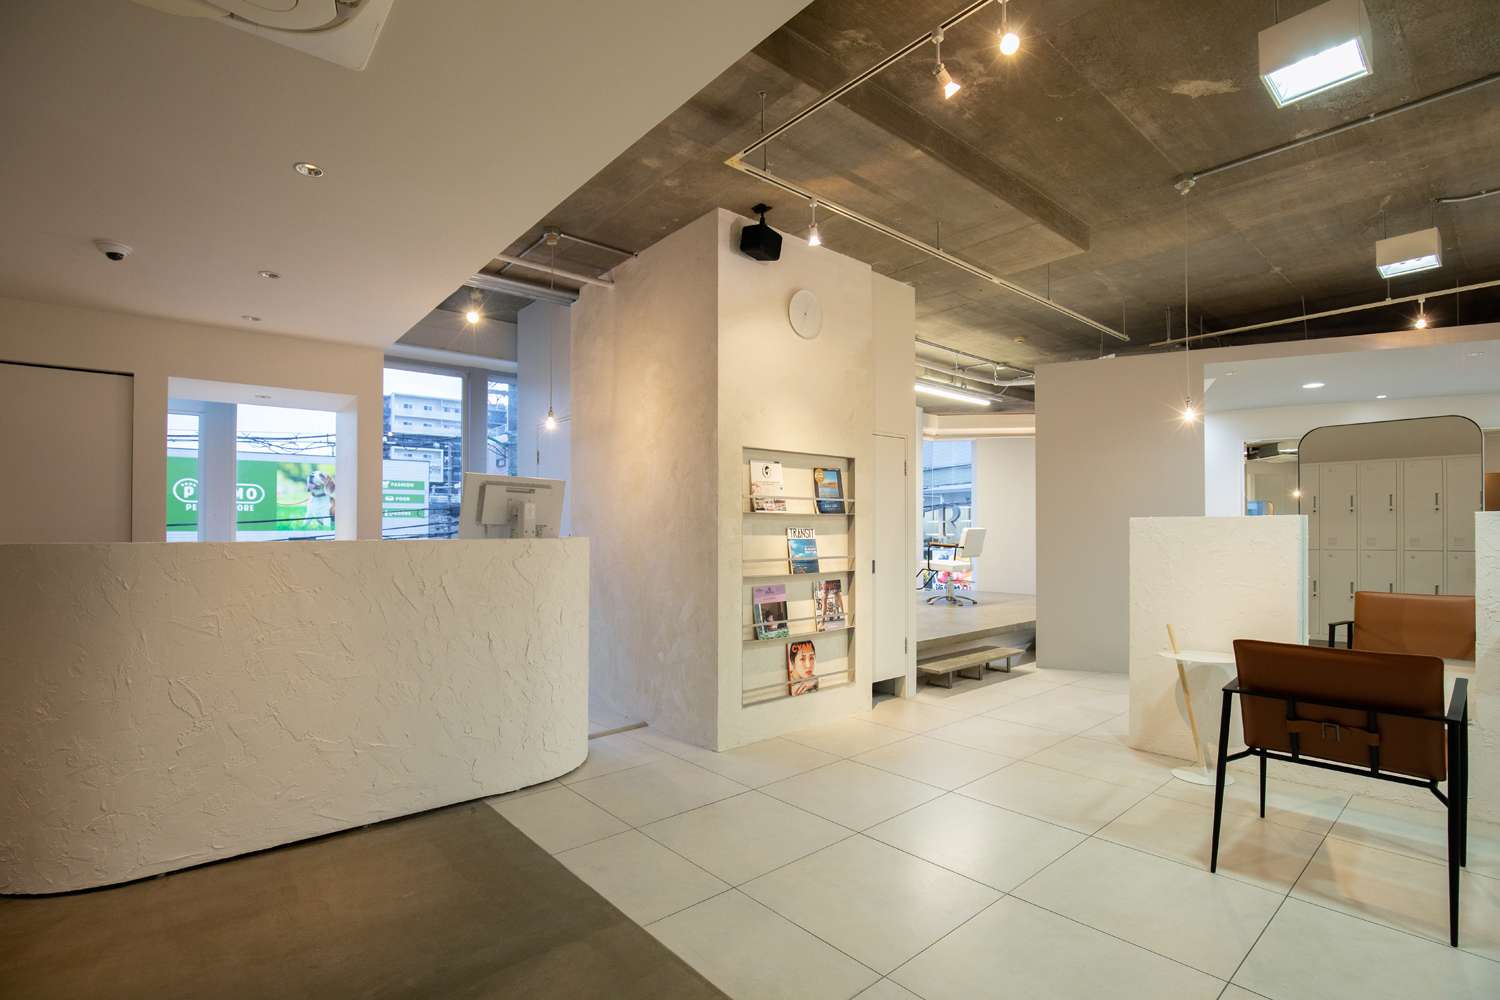 松山市で居心地の良いクリニックデザインは設計事務所asazu design office